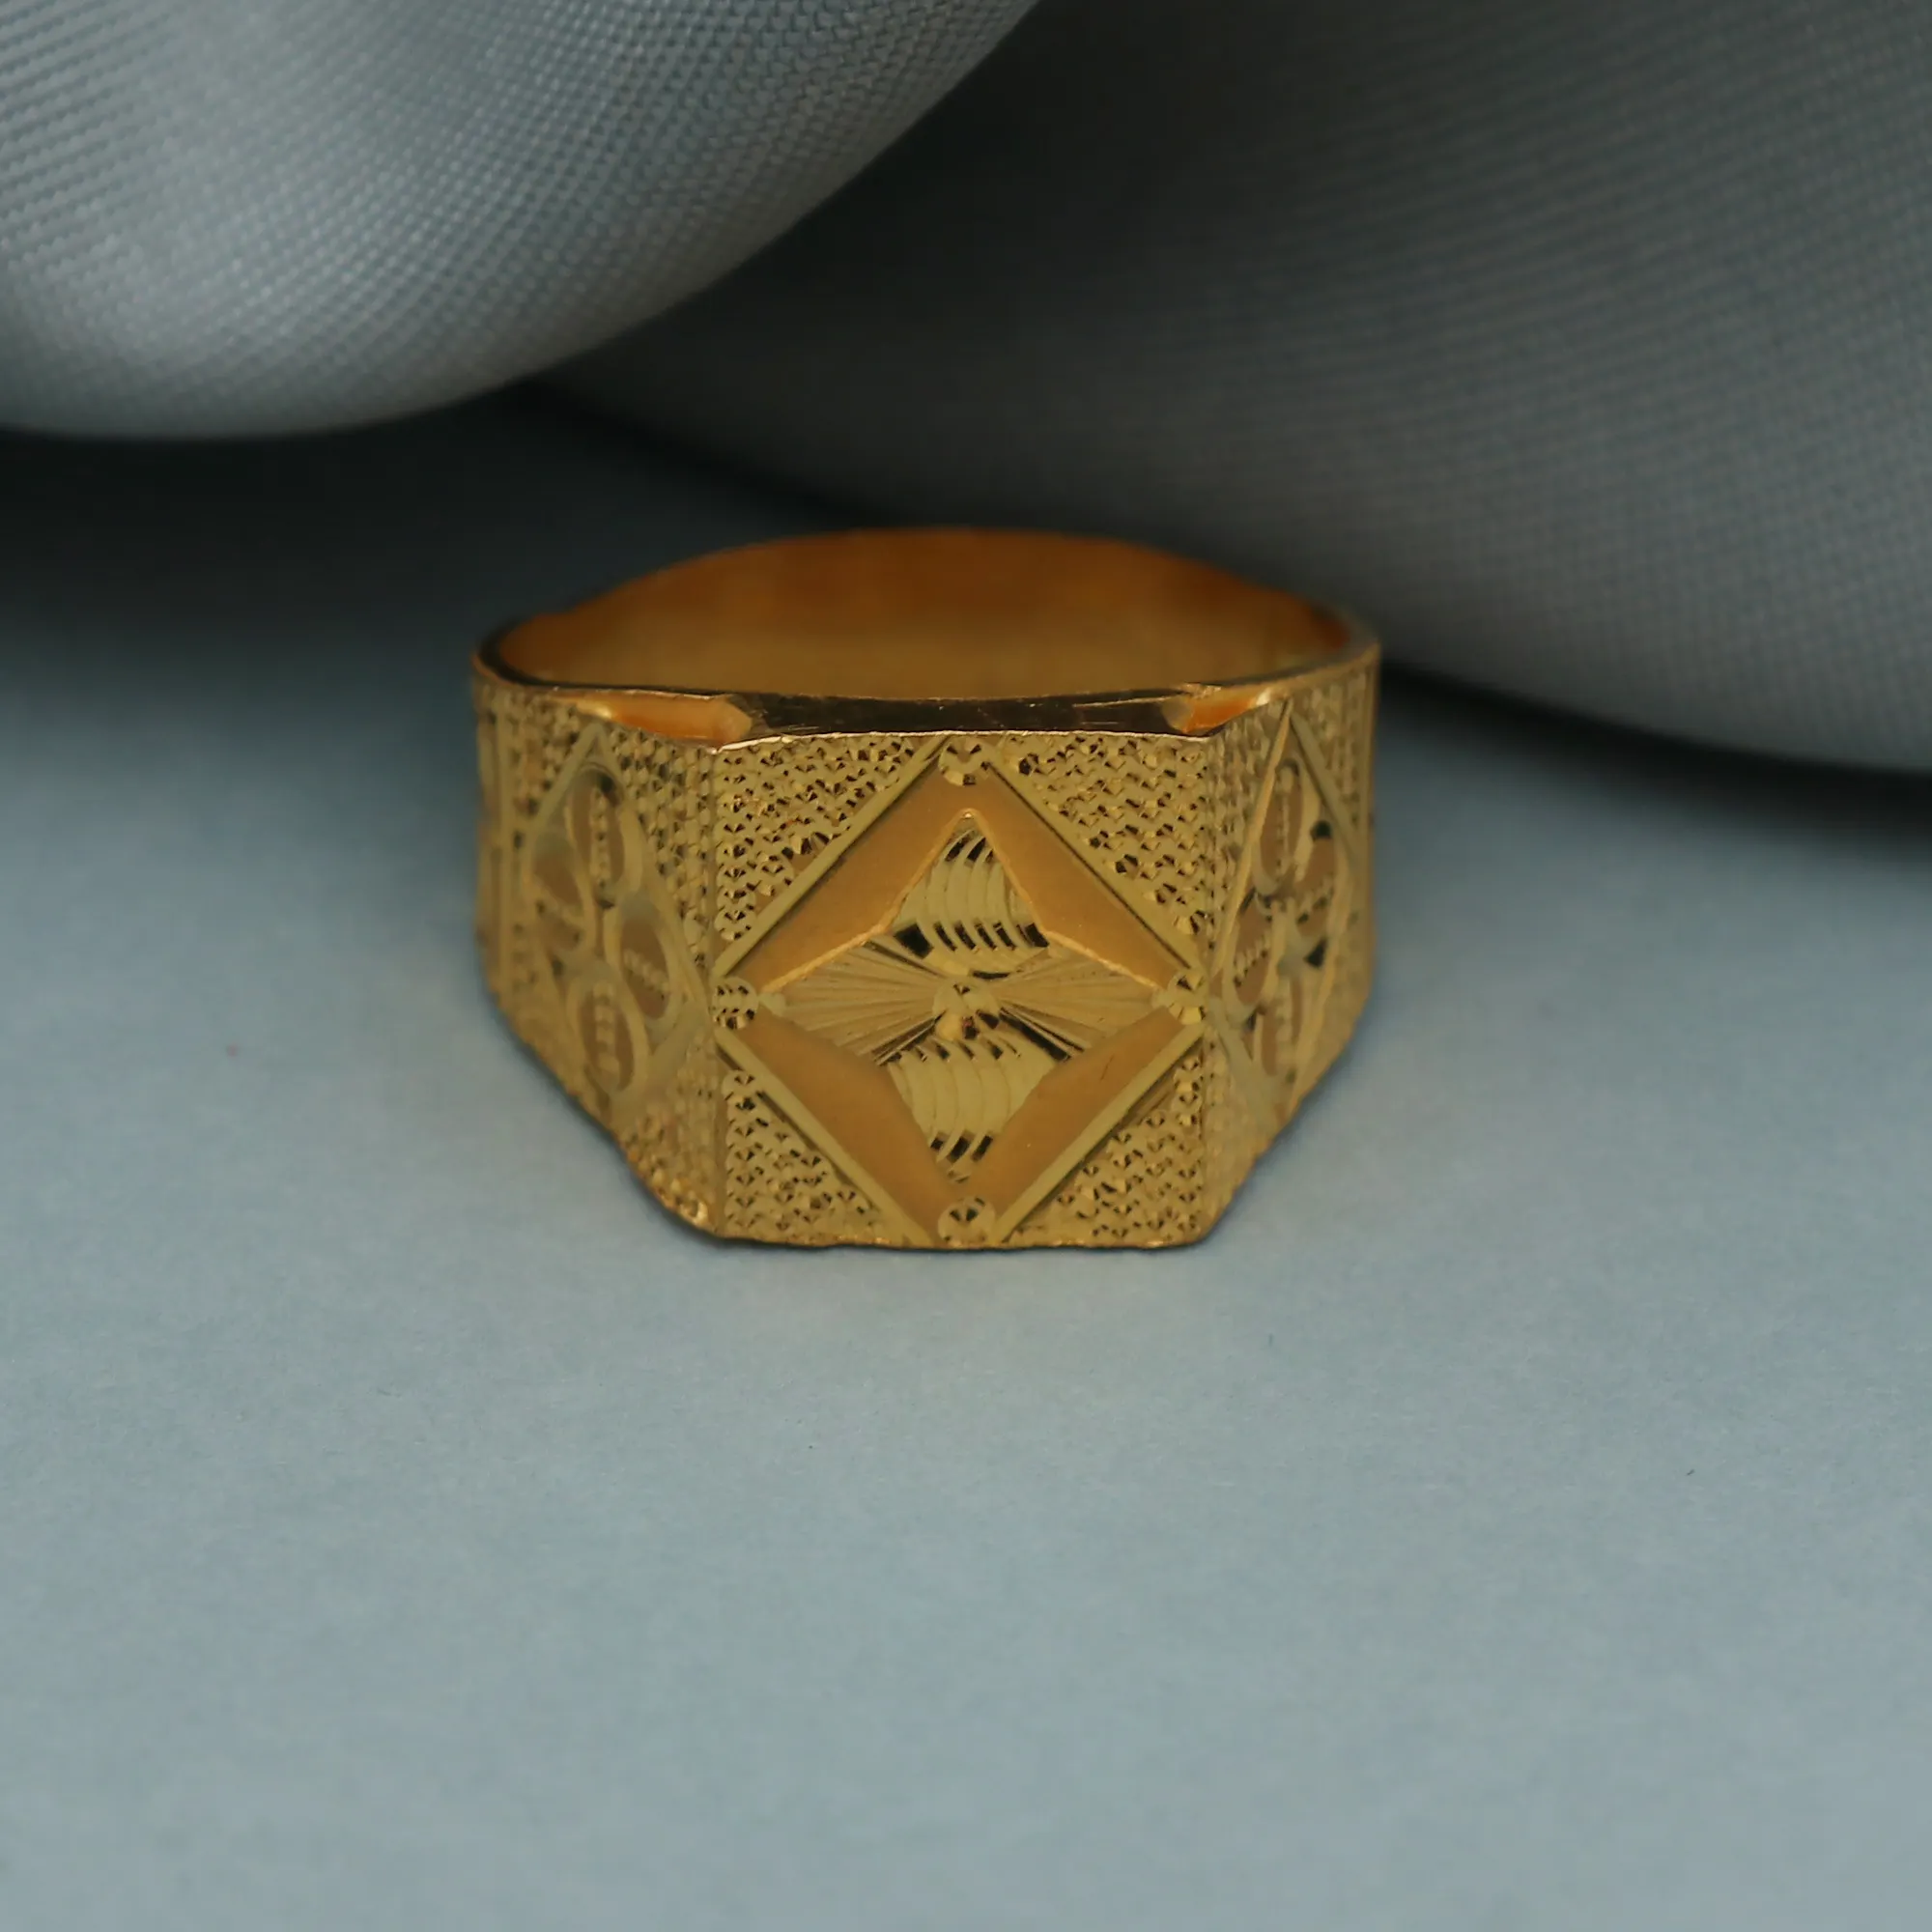 Kaufen Sie 22 Karat massives echtes Gold hand geschnitzte indische Handwerker Männer Gold Ring zum Verkauf feine Schmuck ringe von indischen Exporteuren